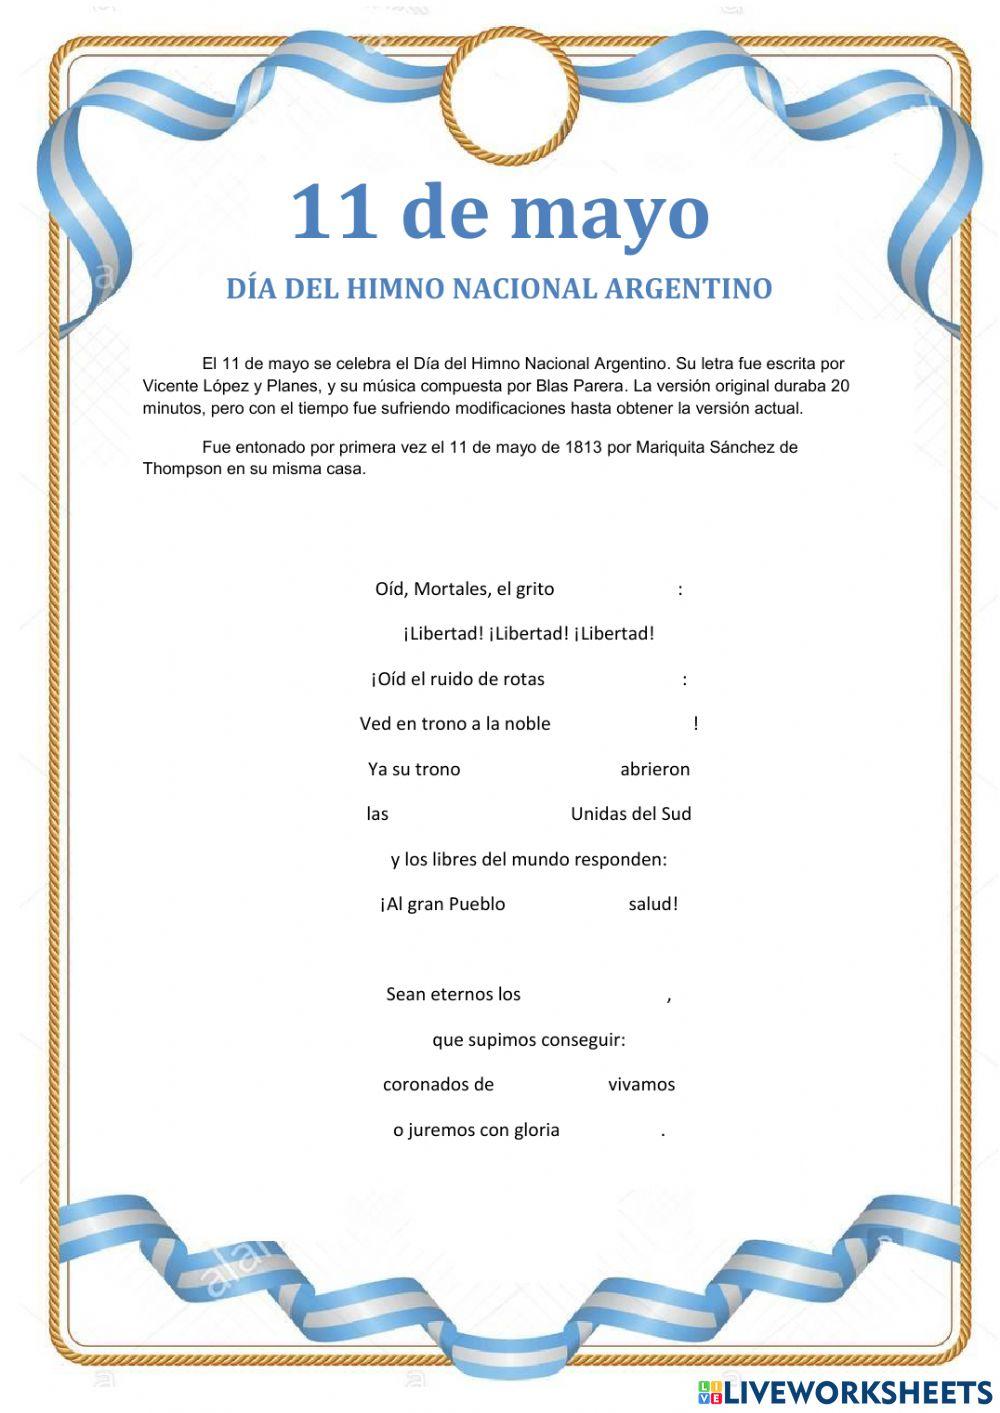 11 de mayo día del himno nacional argentino